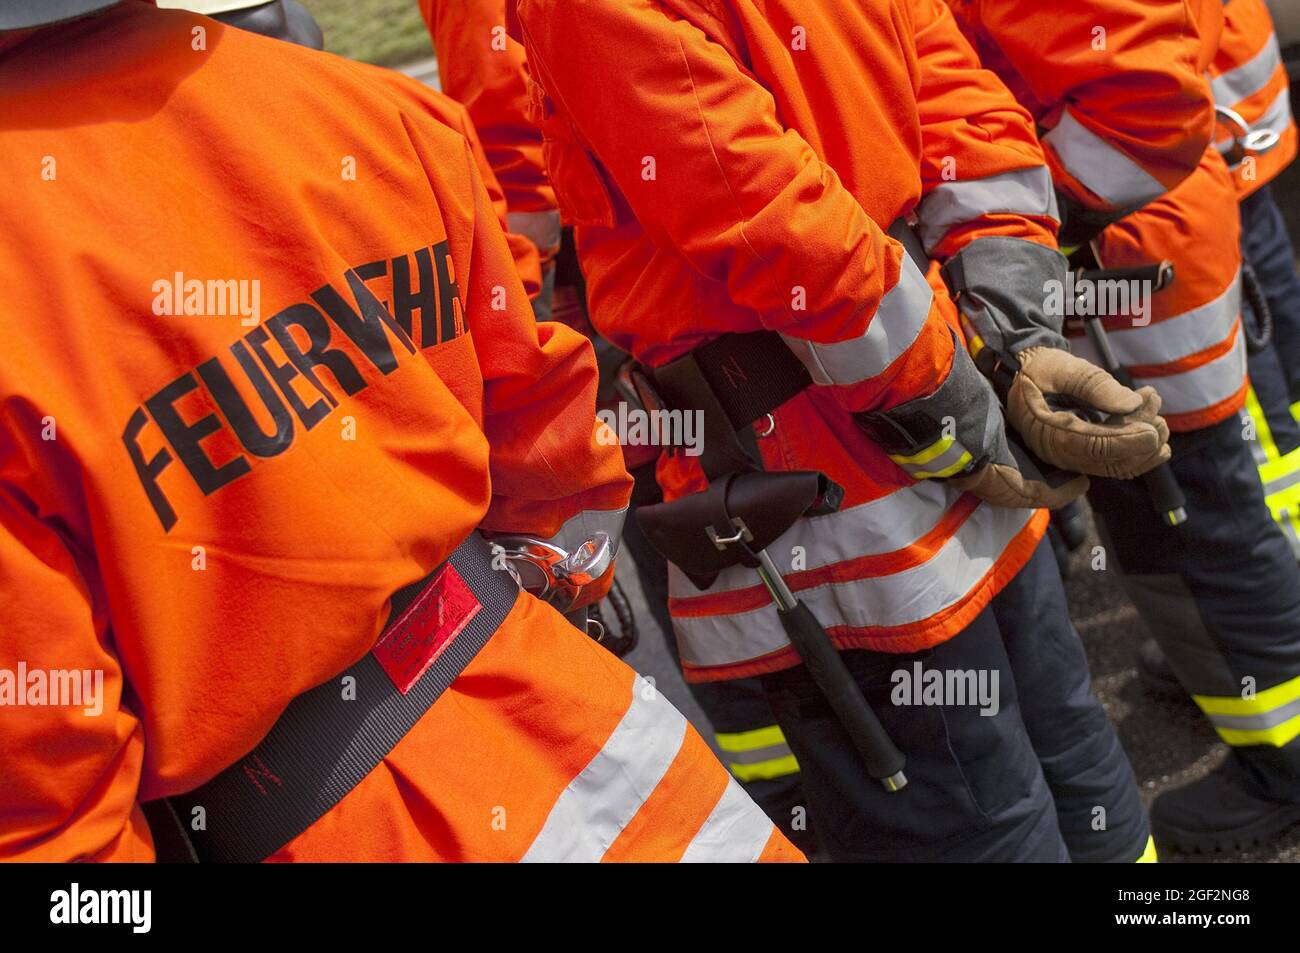 Feuerwehrleute stehen zusammen, retroreflektive Streifen und fluoreszierende Farben auf der Schutzkleidung, Deutschland Stockfoto